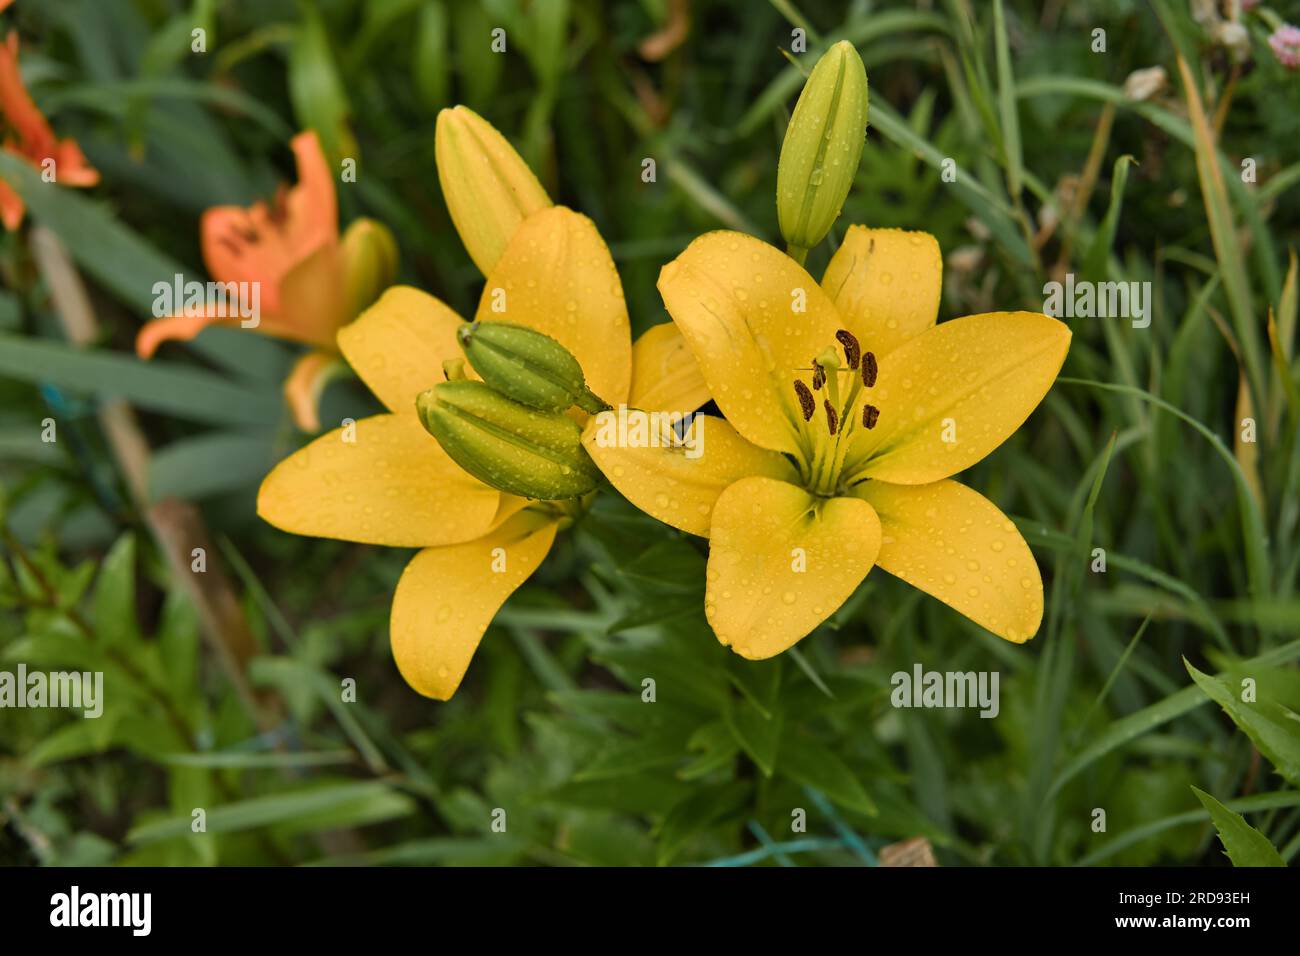 Zwei gelbe Lilien in Blüte, Nahaufnahme. Lilien im Garten nach dem Regen mit Regentropfen auf den Blütenblättern. Selektiver Fokus. Stockfoto